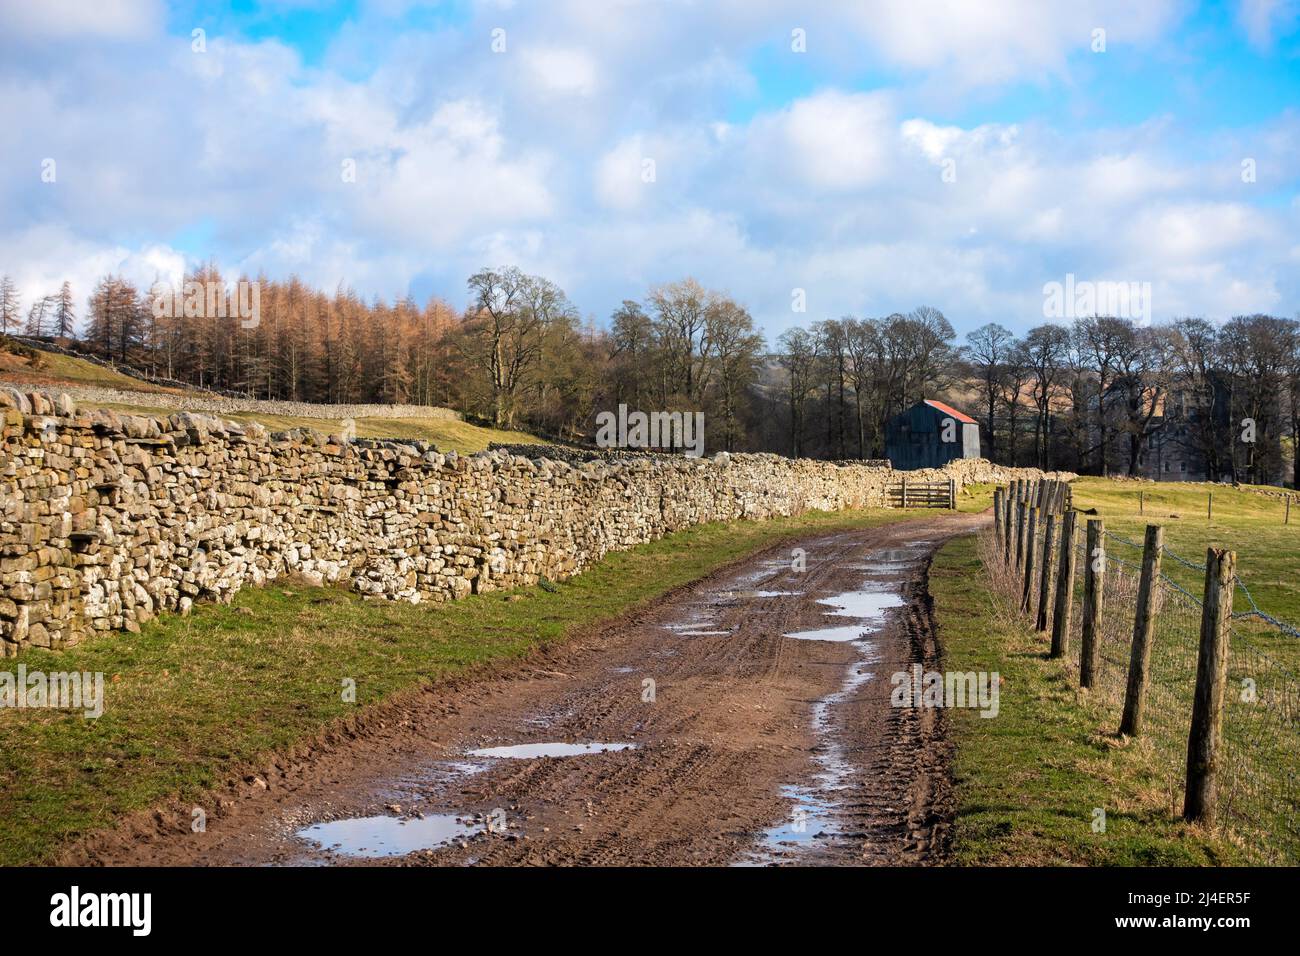 Percorso accidentato che conduce al Castello di Bolton, a Wensleydale e al Parco Nazionale Yorkshire Dales. Iconiche pareti di pietra asciutta racchiudono pascoli di pecora. Foto Stock